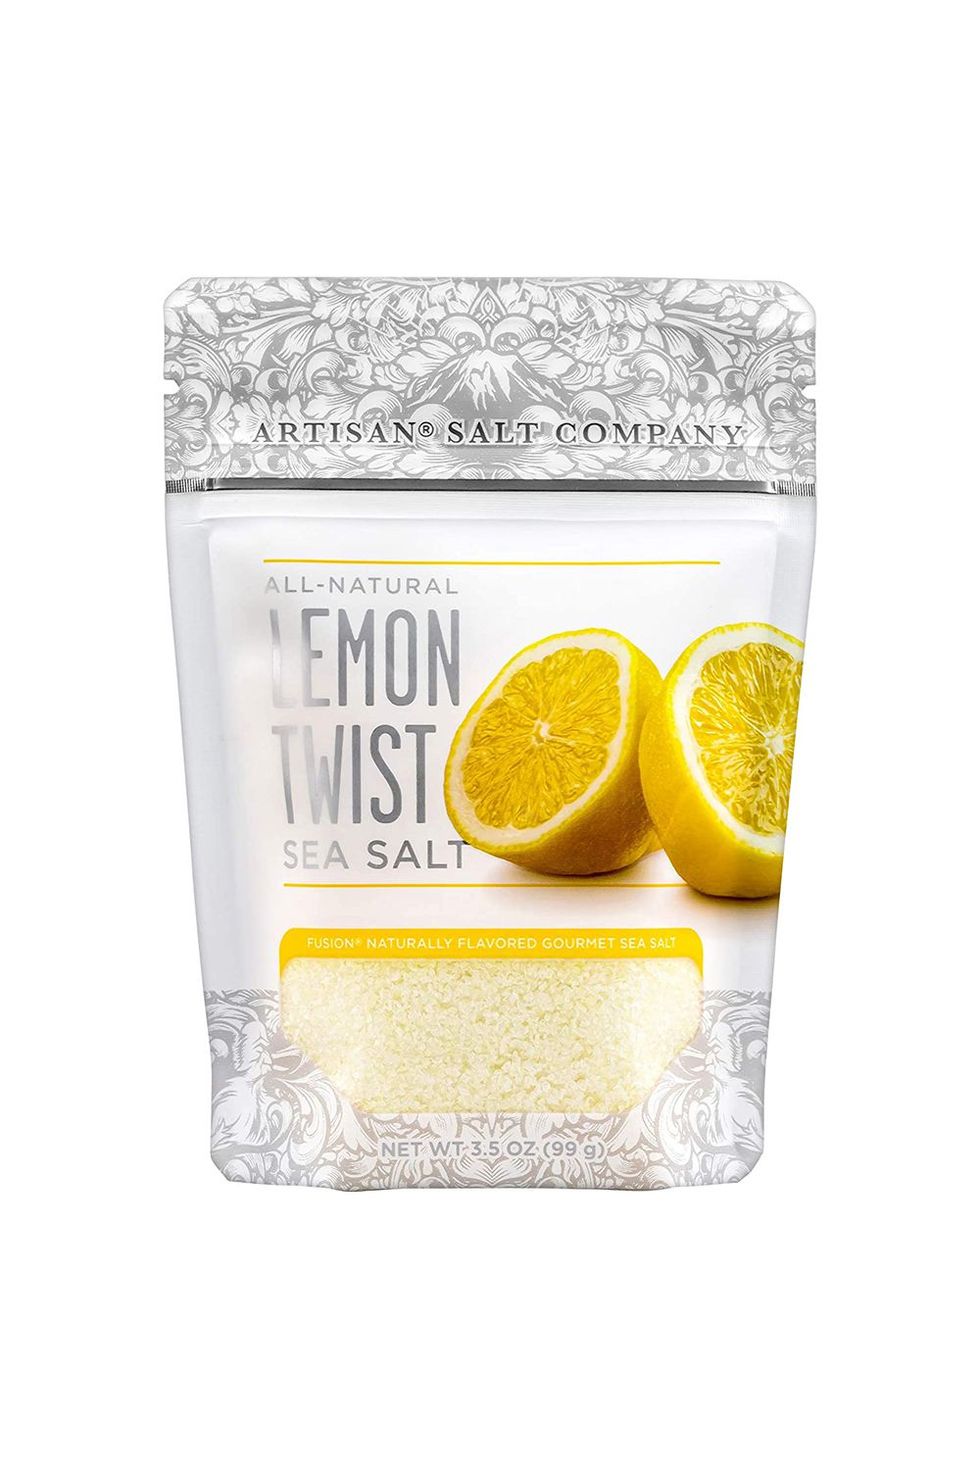 Lemon Twist Sea Salt